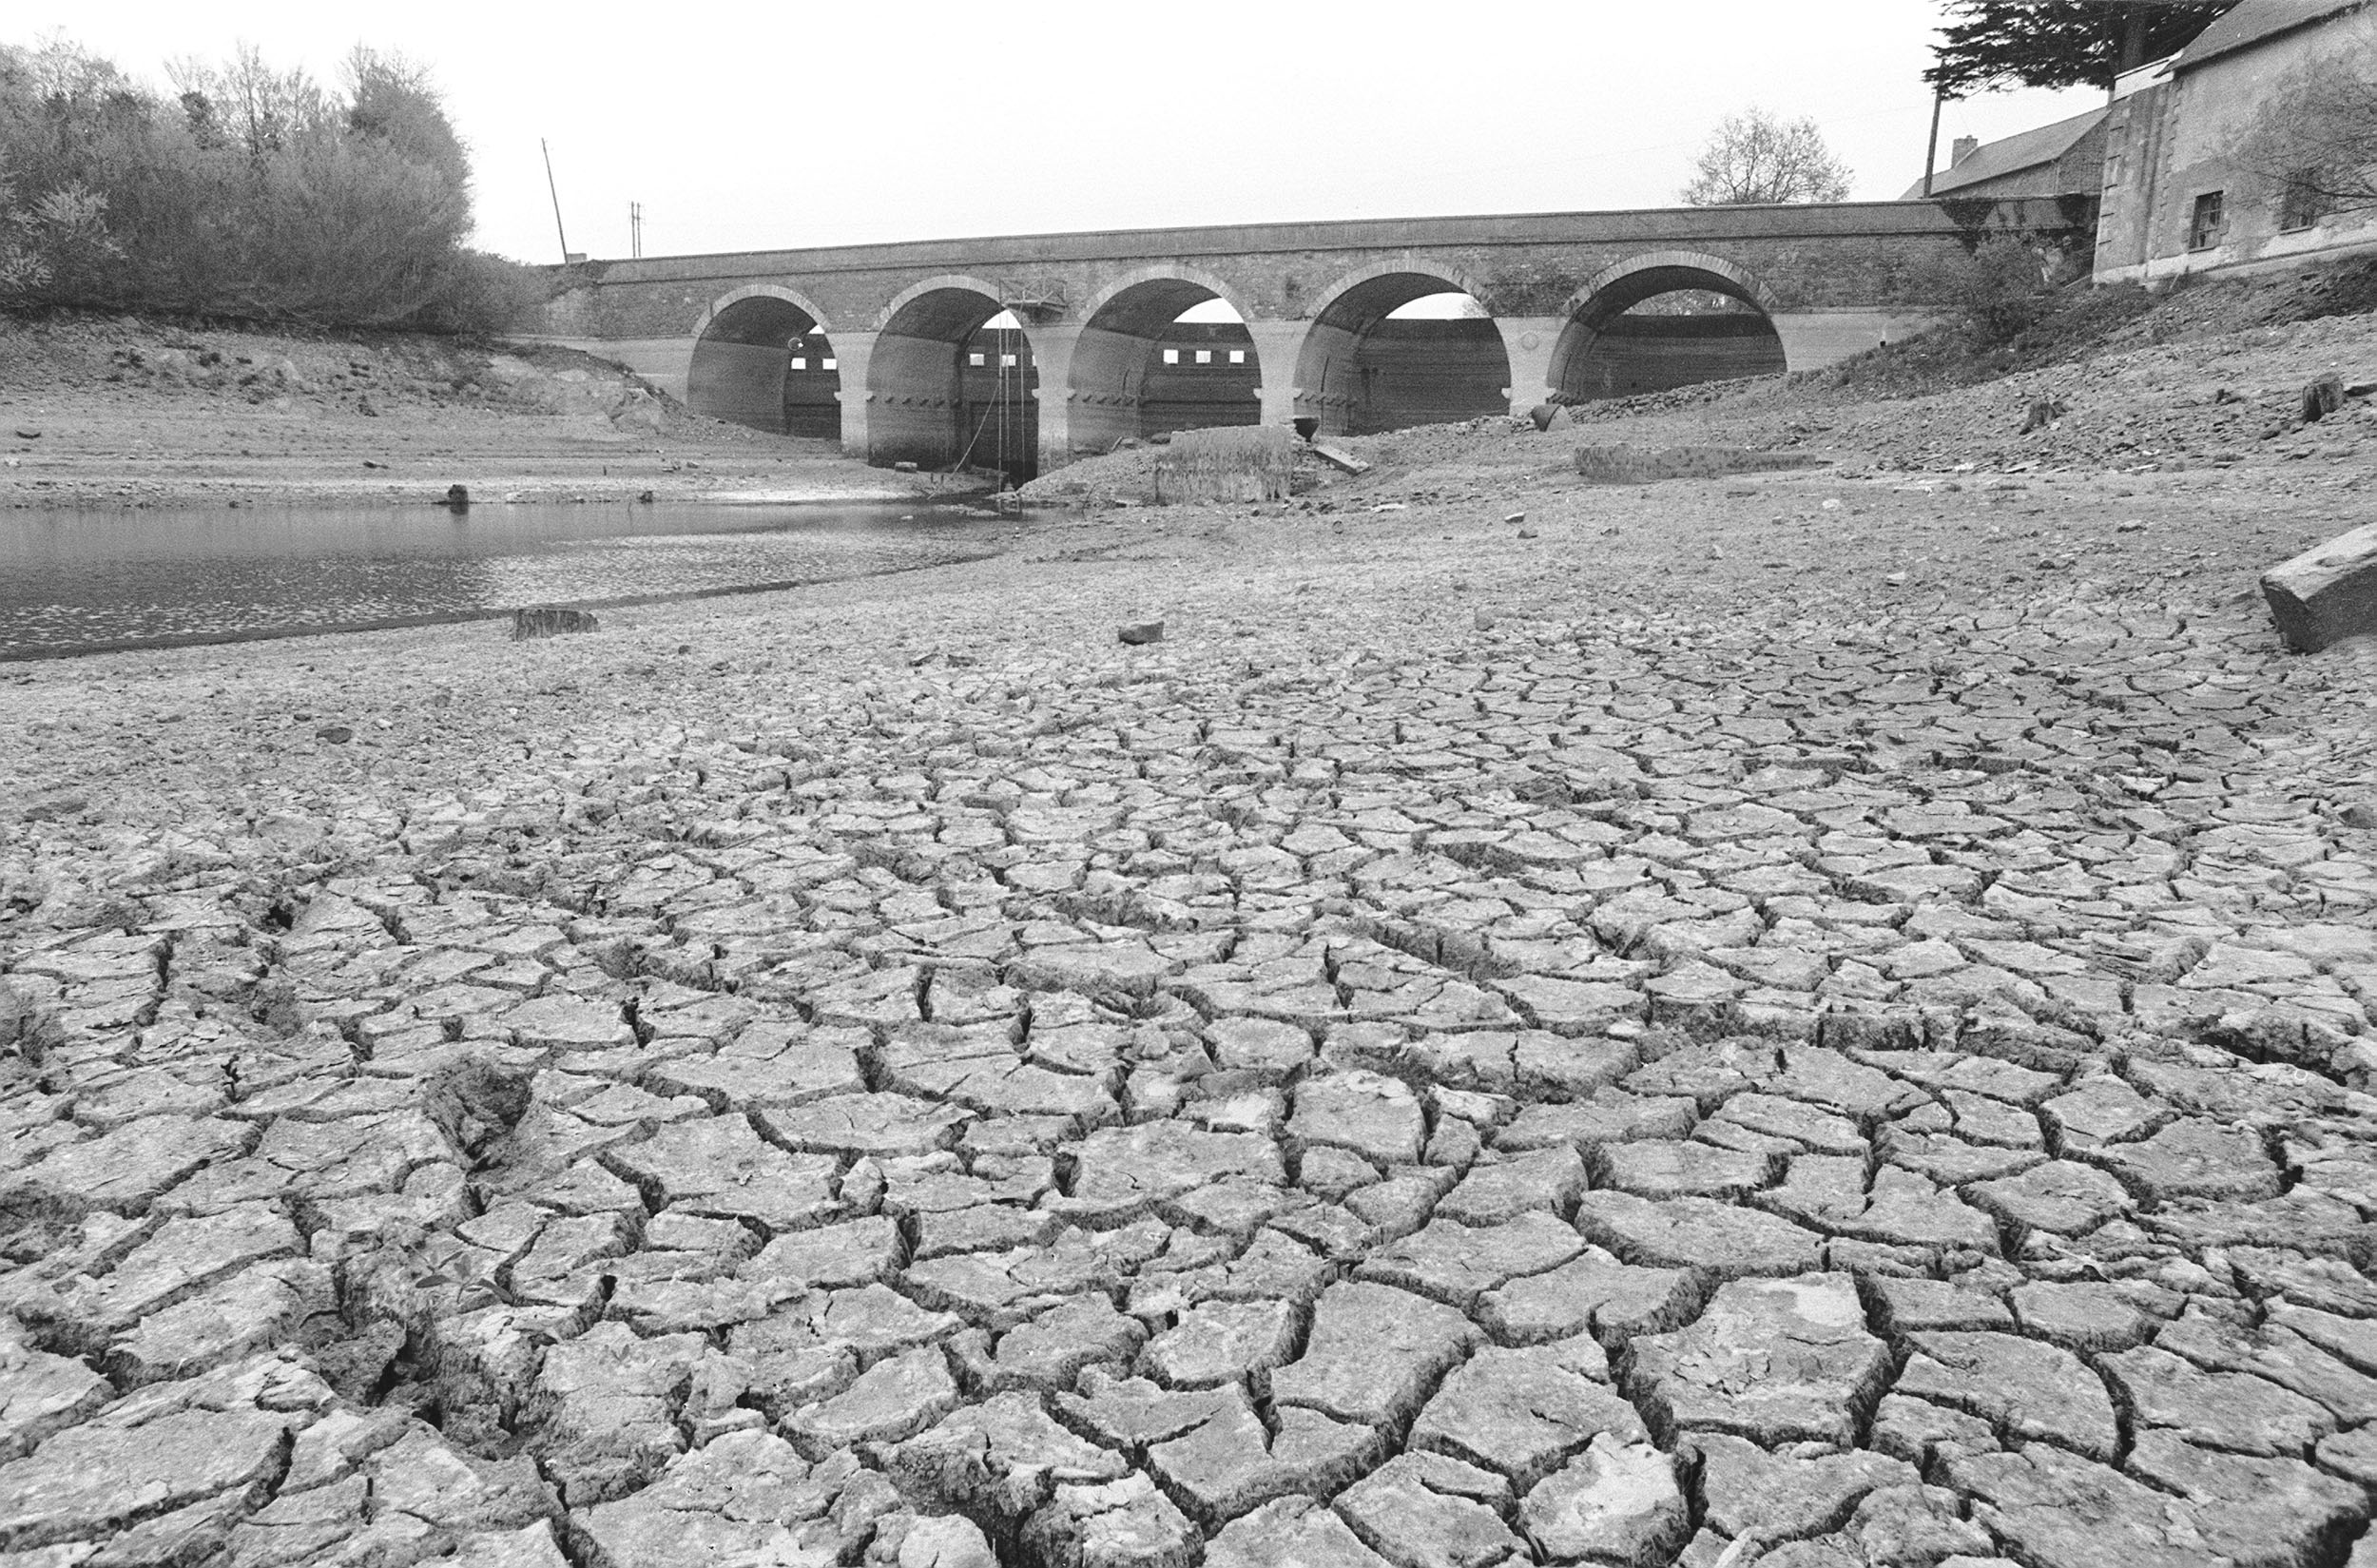 Bretagne-i szárazság 1976 áprilisában